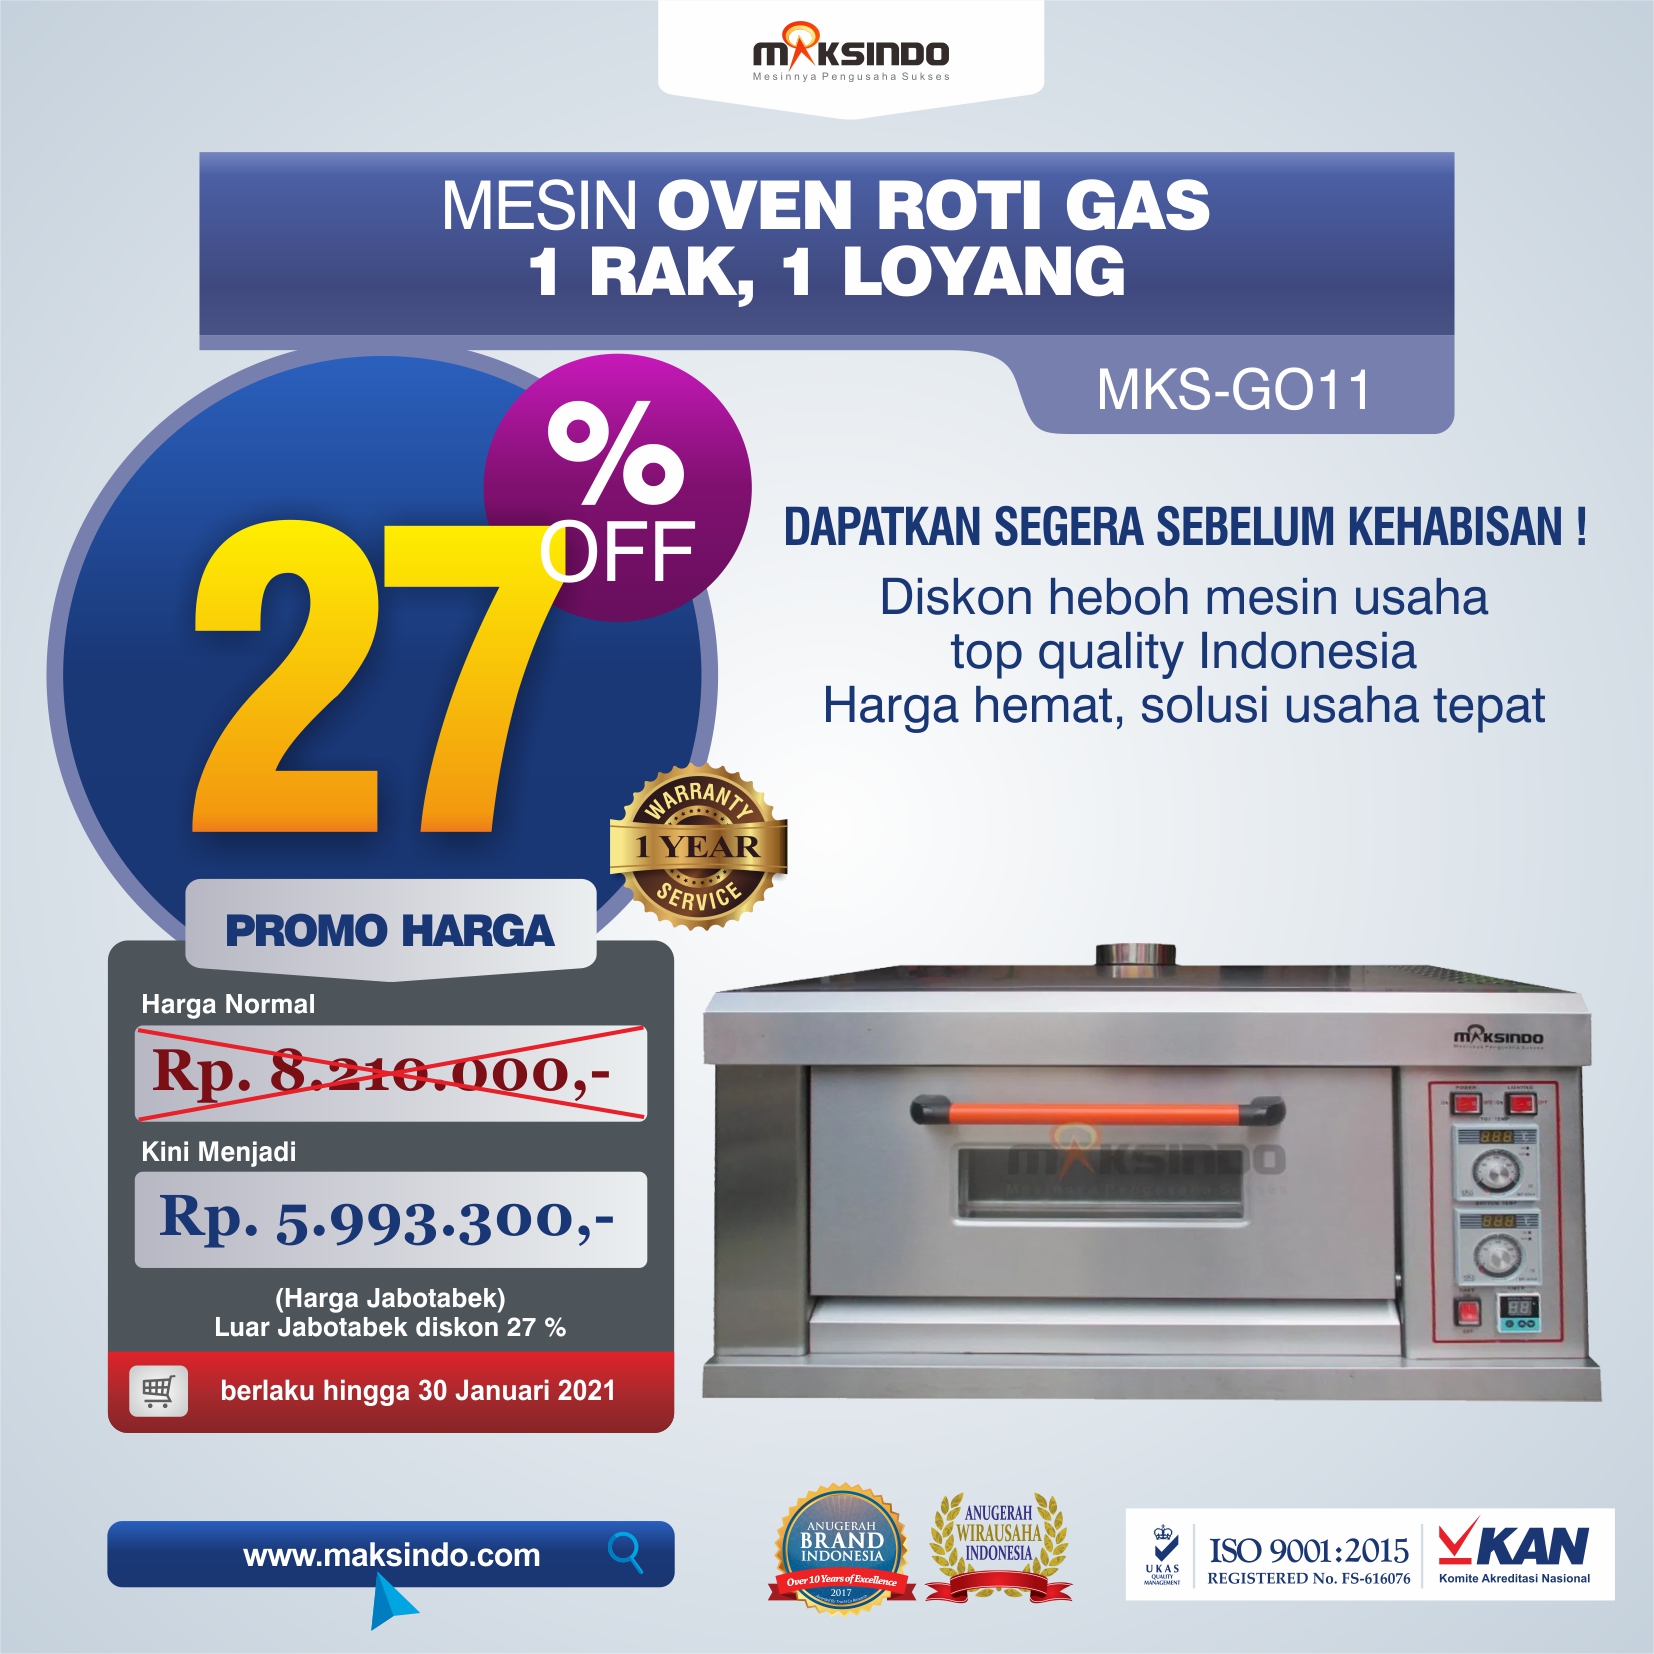 Jual Mesin Oven Roti Gas (MKS-GO11) di Tangerang